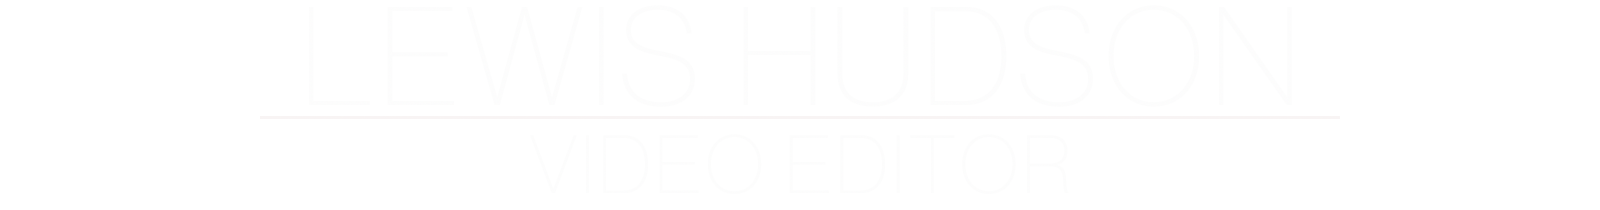 Lewis Hudson - Video Editor